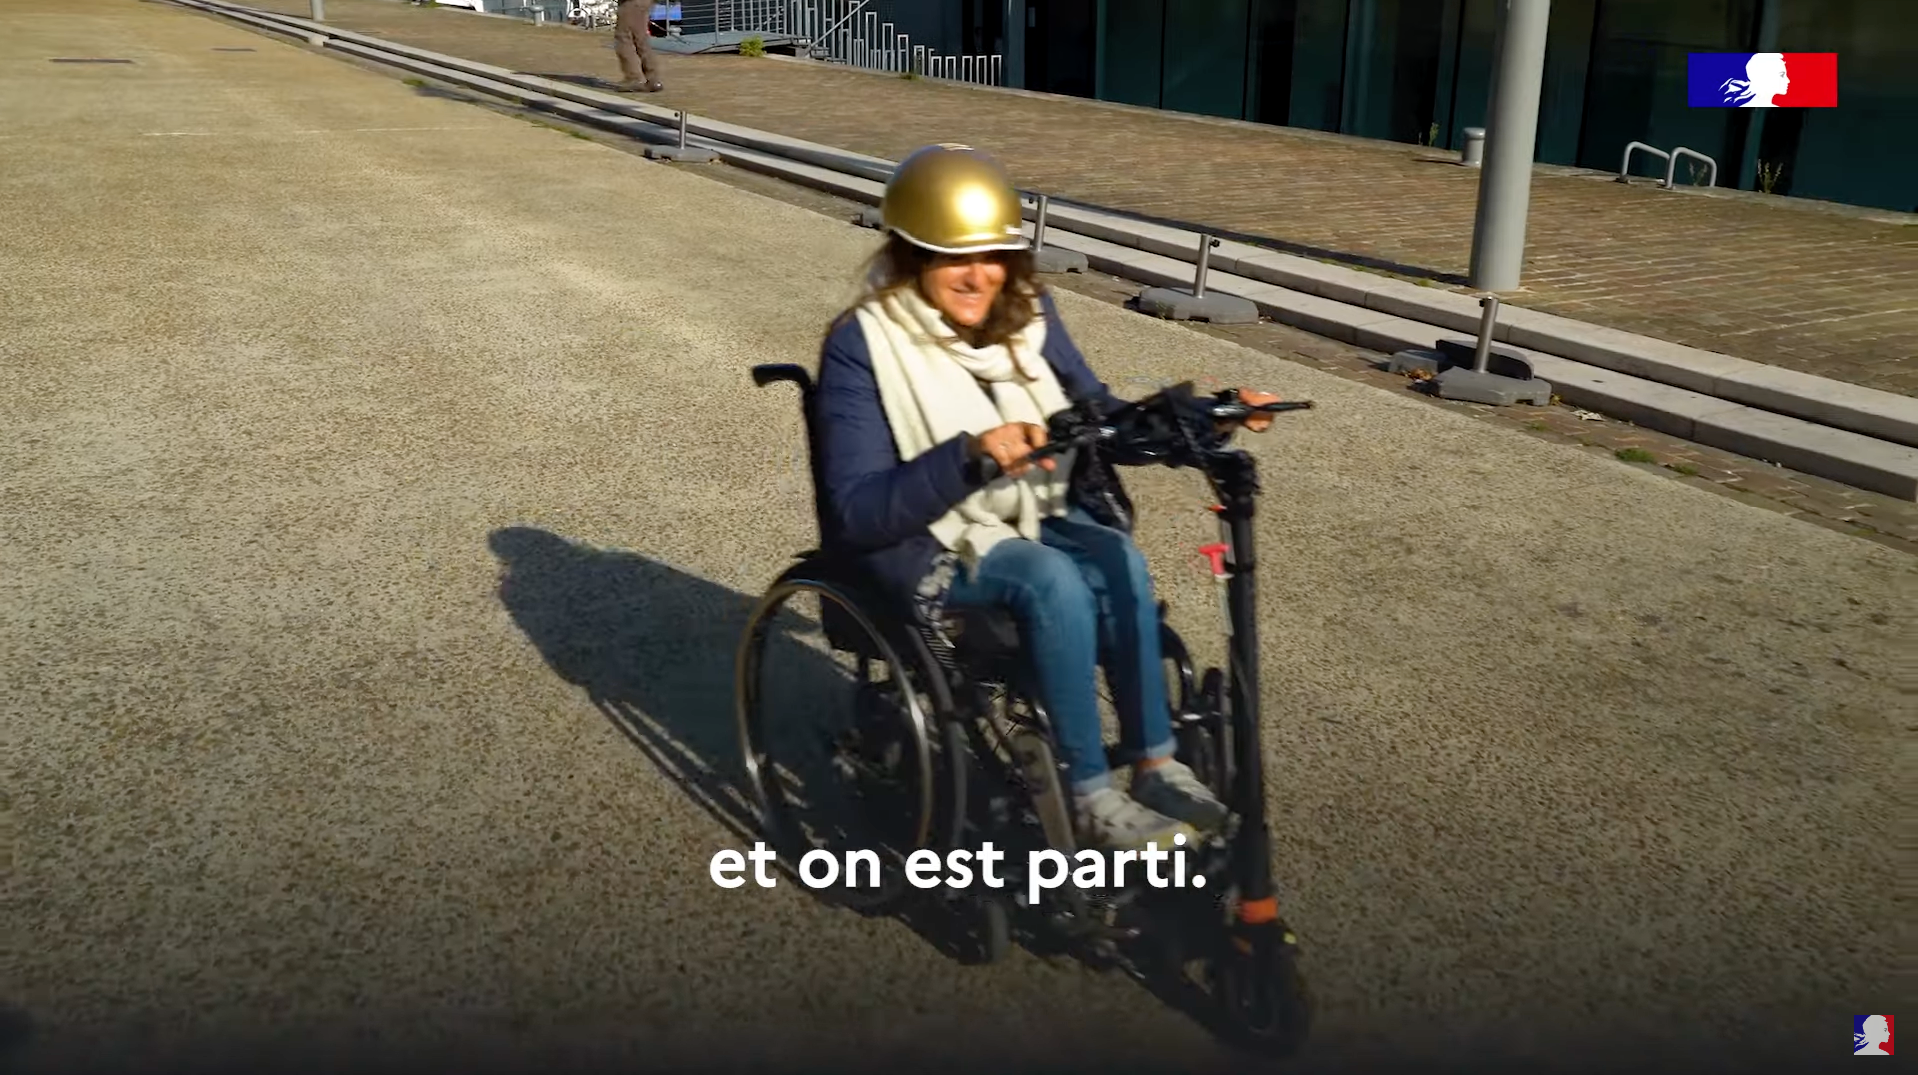 Gouvernement : « GlobeTrotter », le pari gagnant de clipser une trottinette à un fauteuil roulant